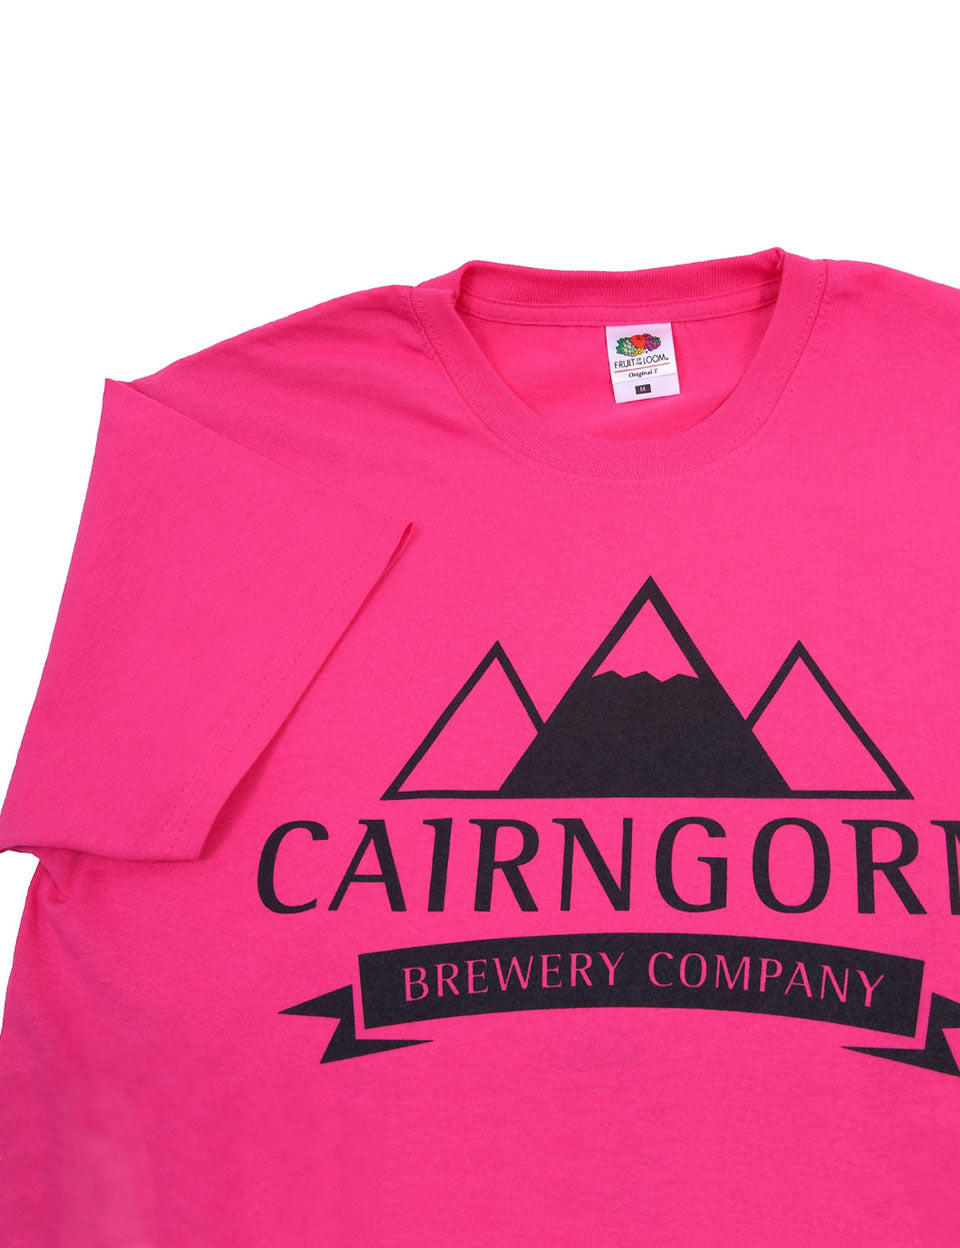 Pink Cairngorm Brewery T Shirt